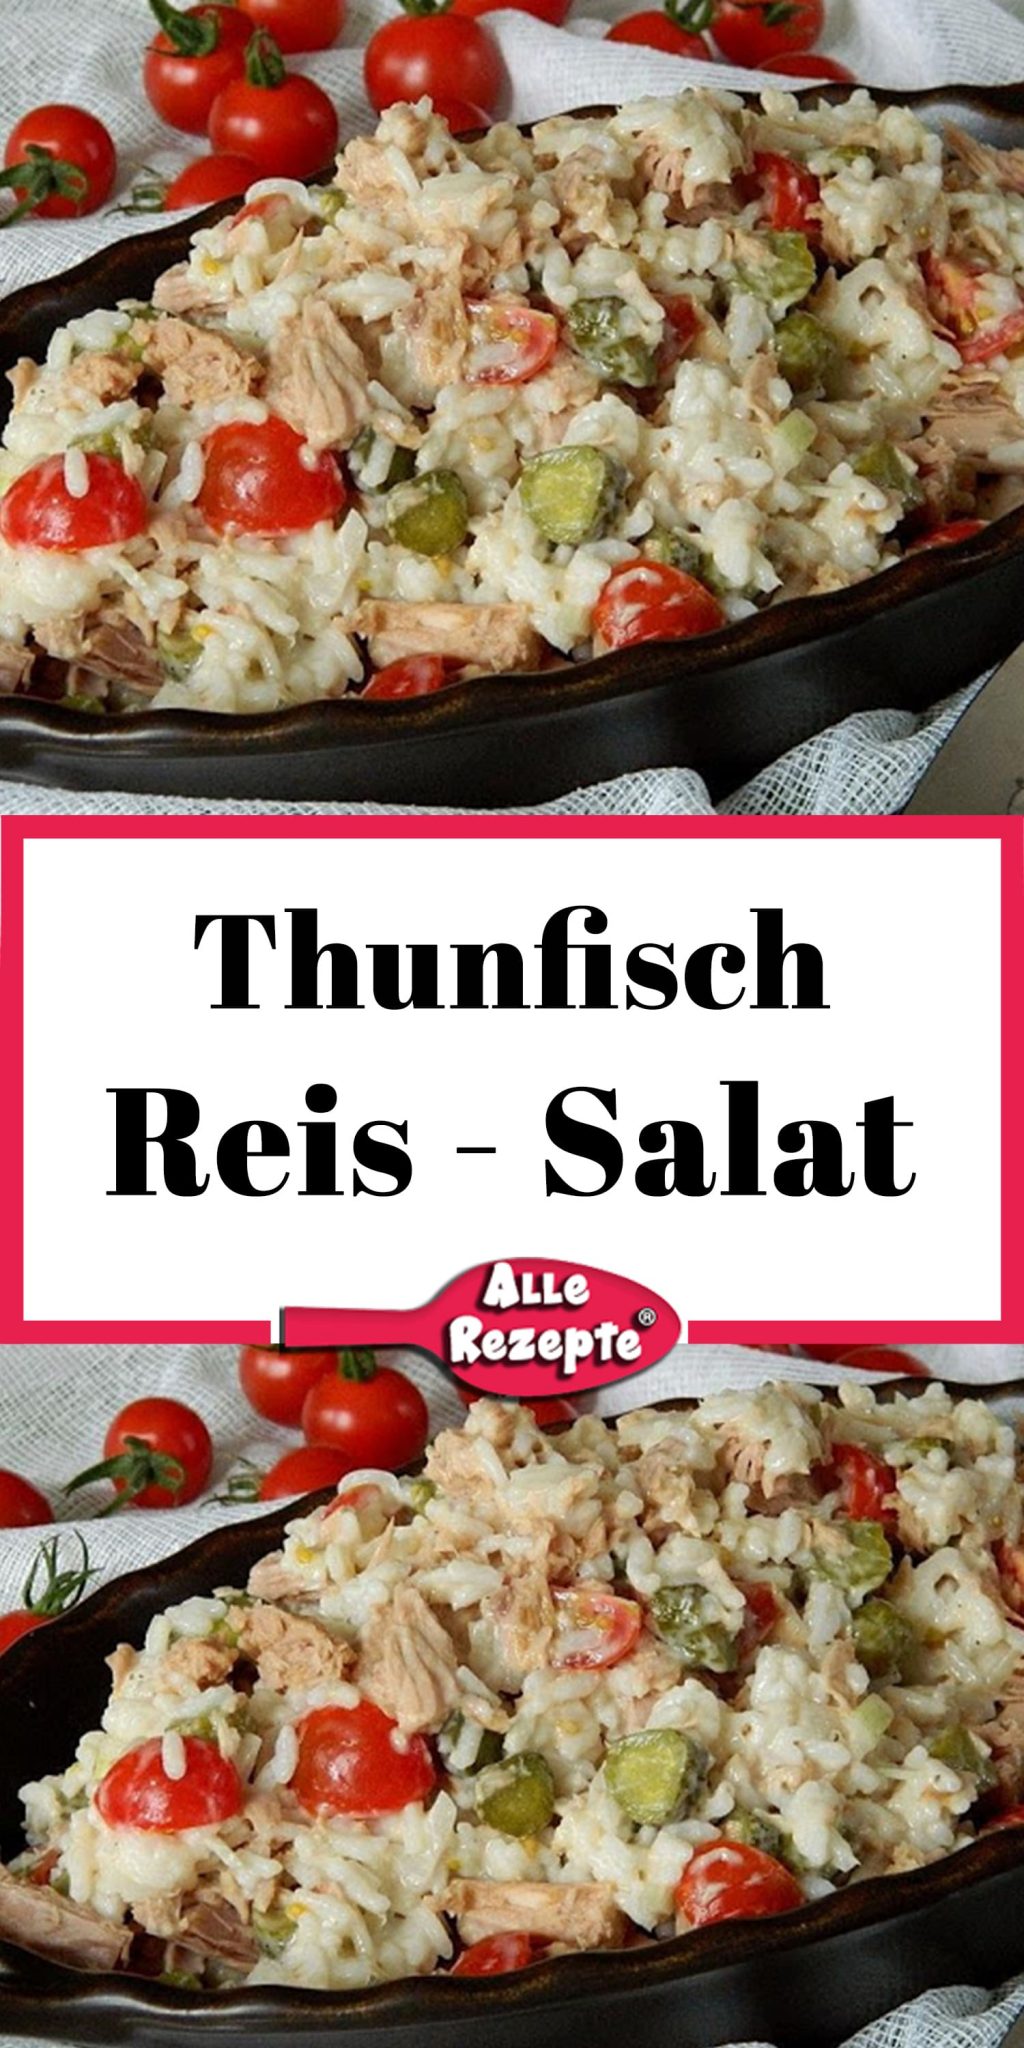 Thunfisch - Reis - Salat - Alle Rezepte